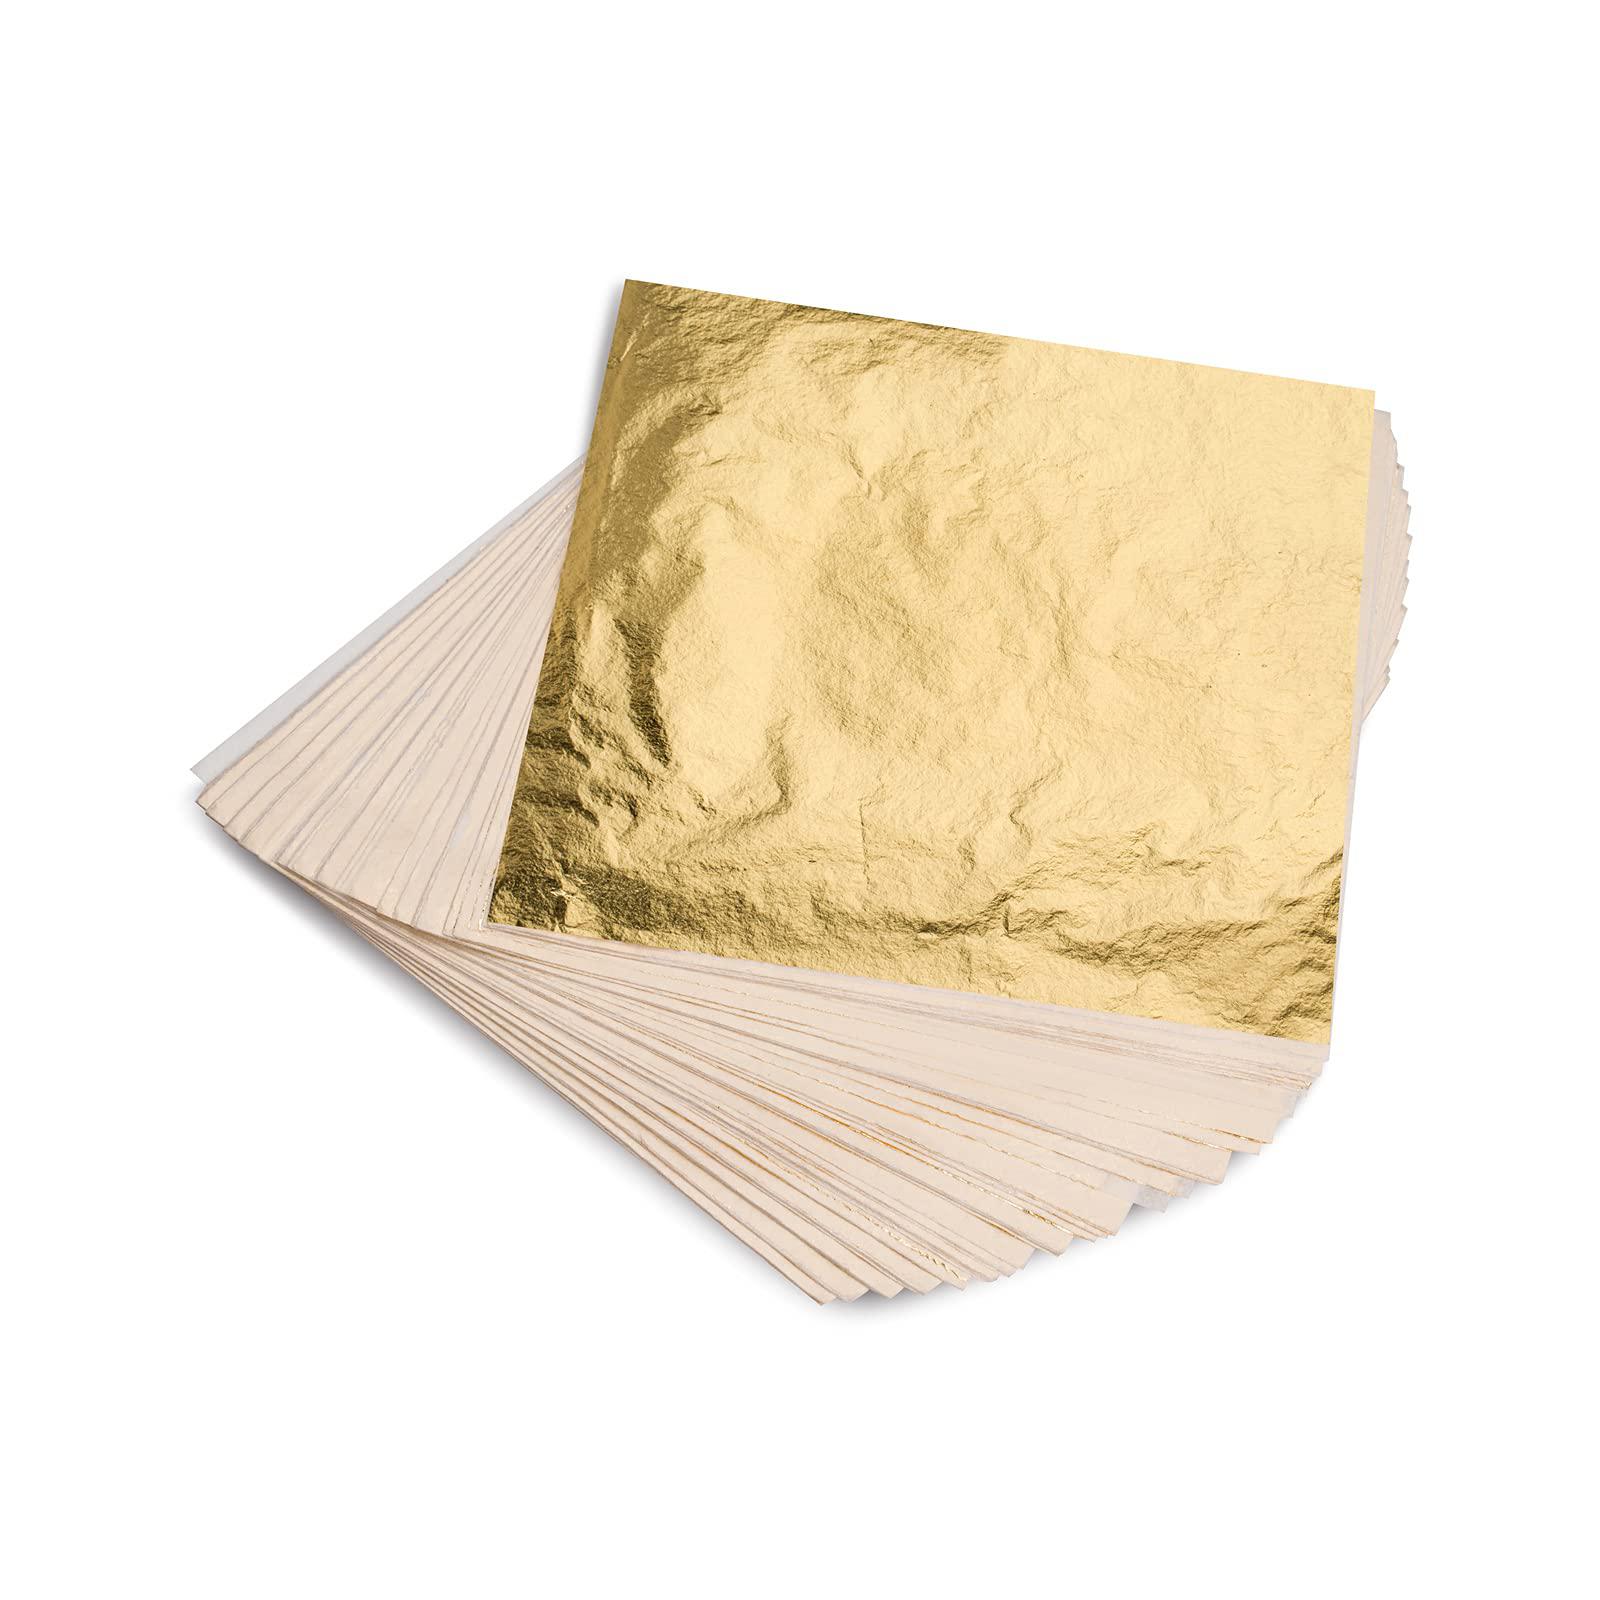 KraftiSky Gold Leaf Sheets - 100 Gold Foil Sheets - 14 x 14 cm Multipurpose Gold Leaf for Nails, Art & DIY Projects, Picture Frames, Home Walls, Inte